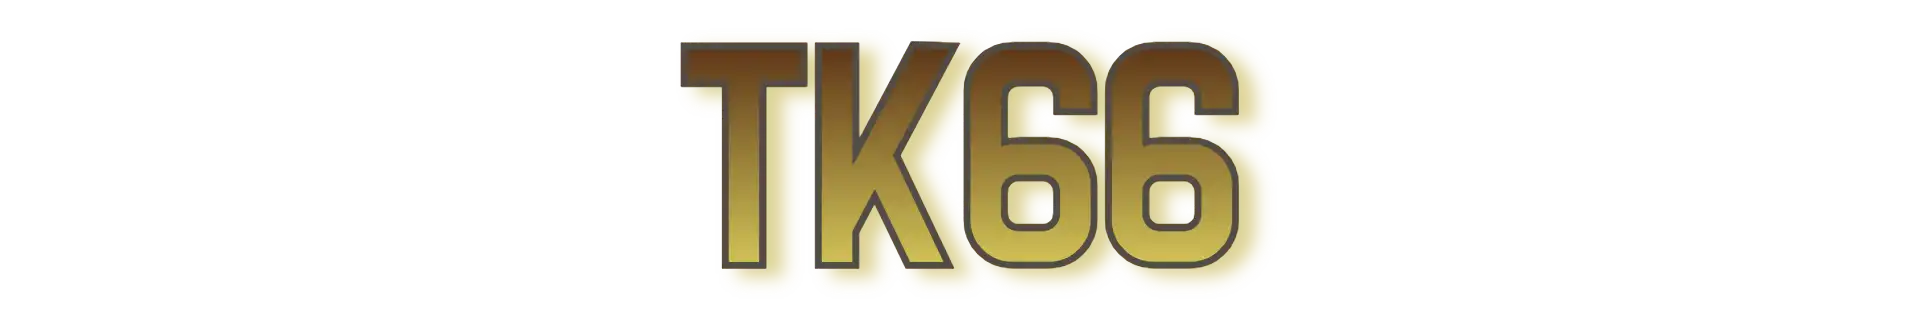 TK66